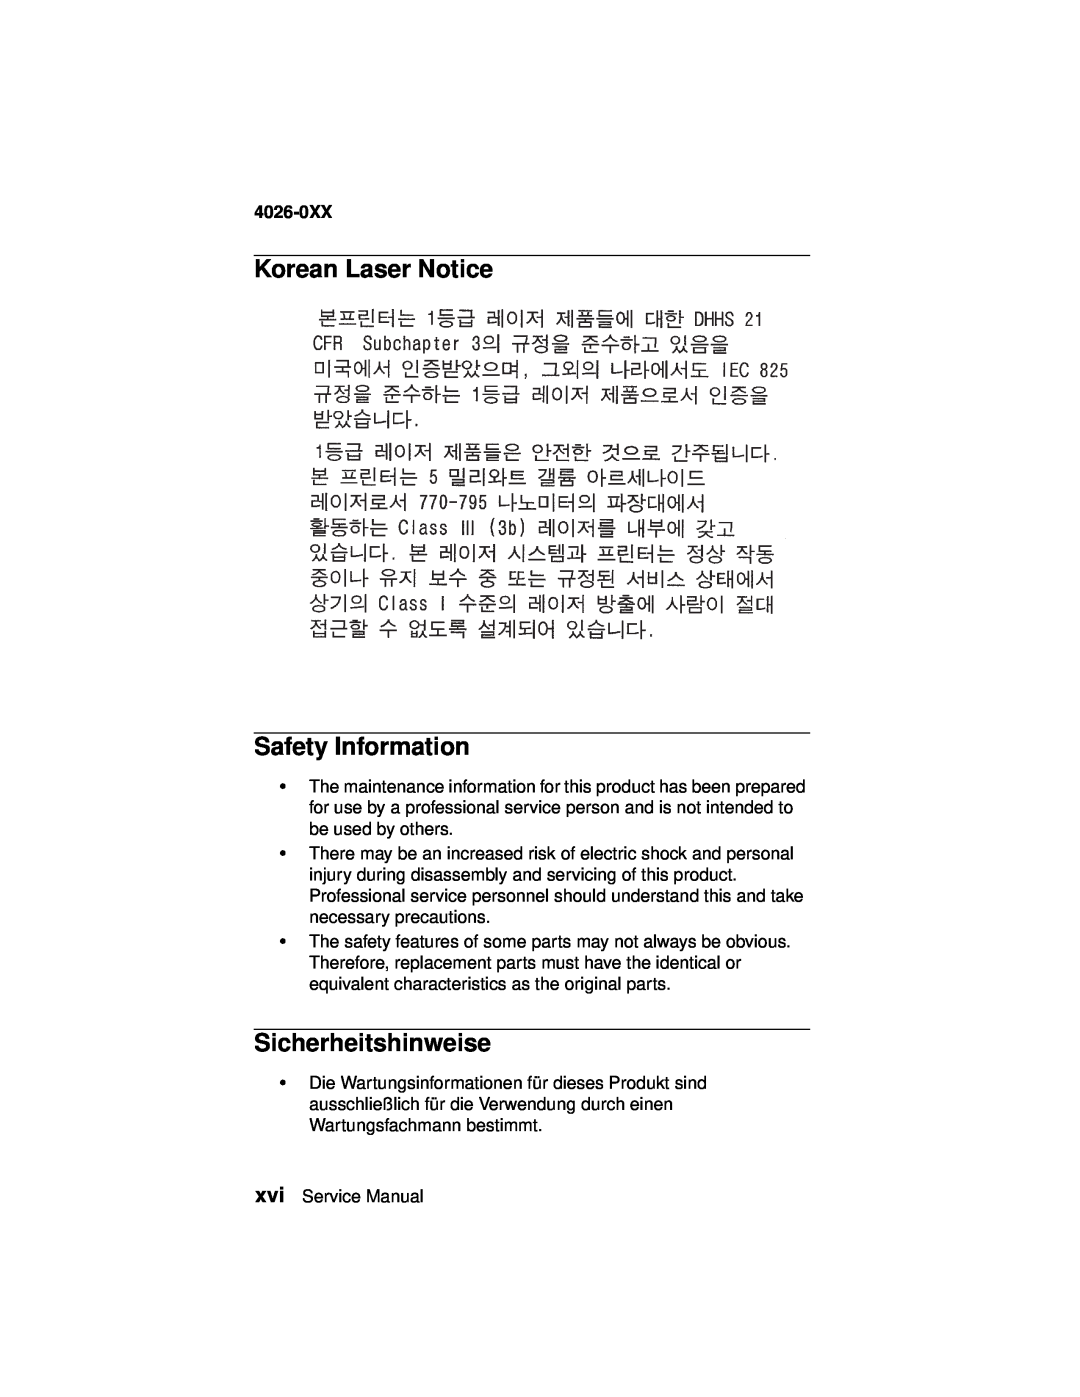 Lexmark 4026-0XX manual Korean Laser Notice Safety Information, Sicherheitshinweise 